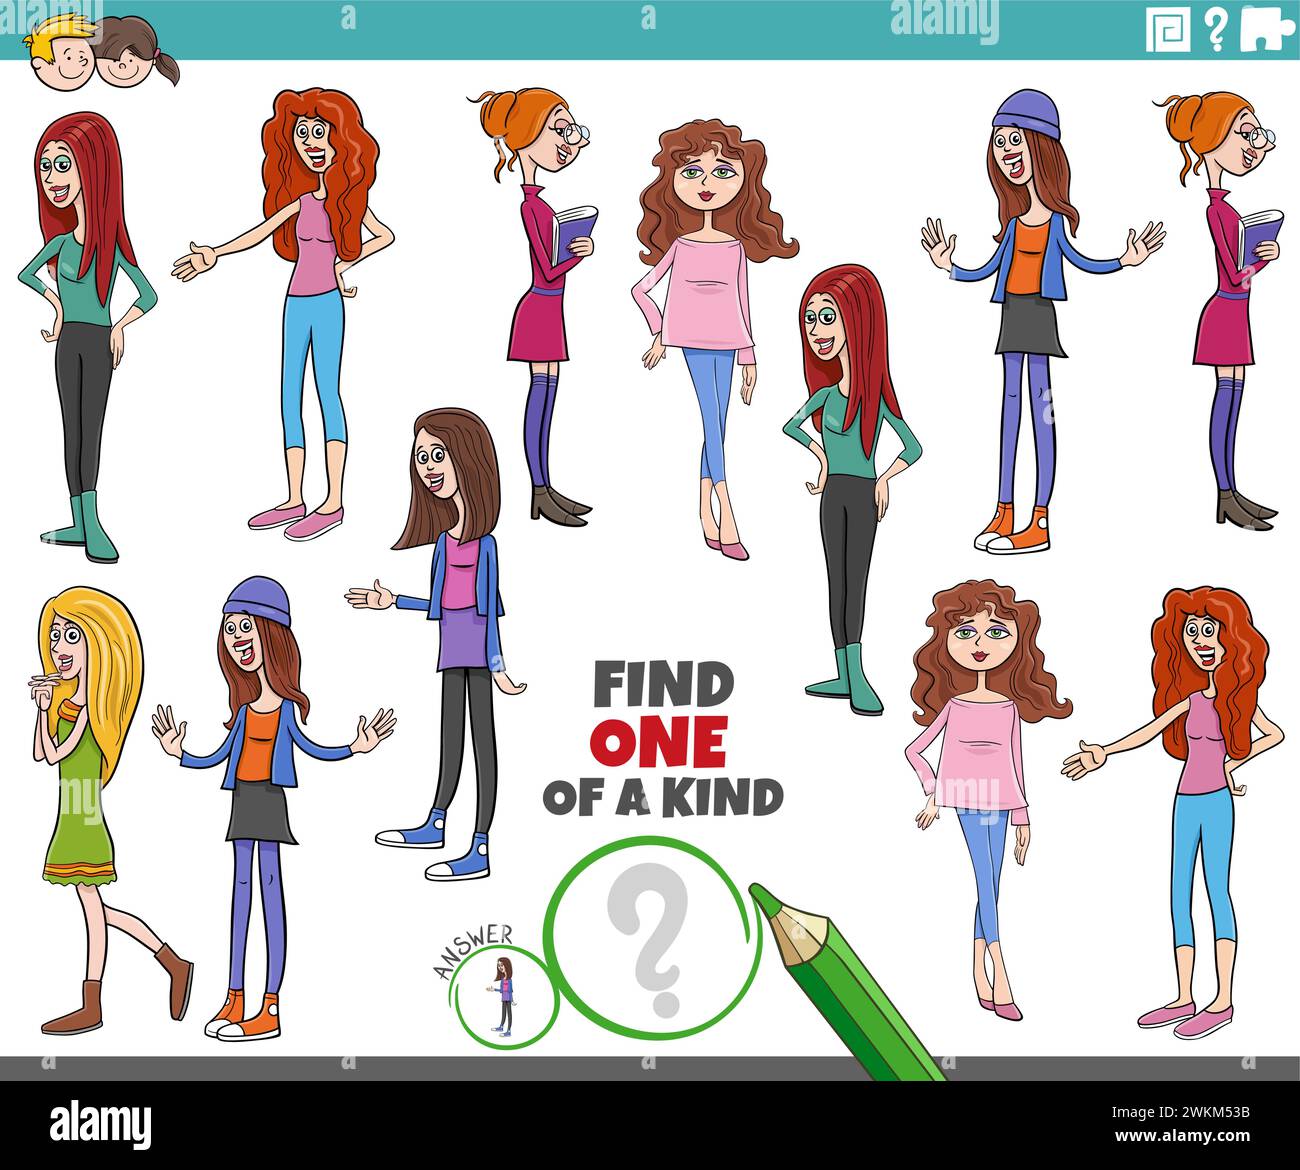 Illustrazione a cartoni animati di Find One of a kind picture Educational game con giovani personaggi femminili Illustrazione Vettoriale